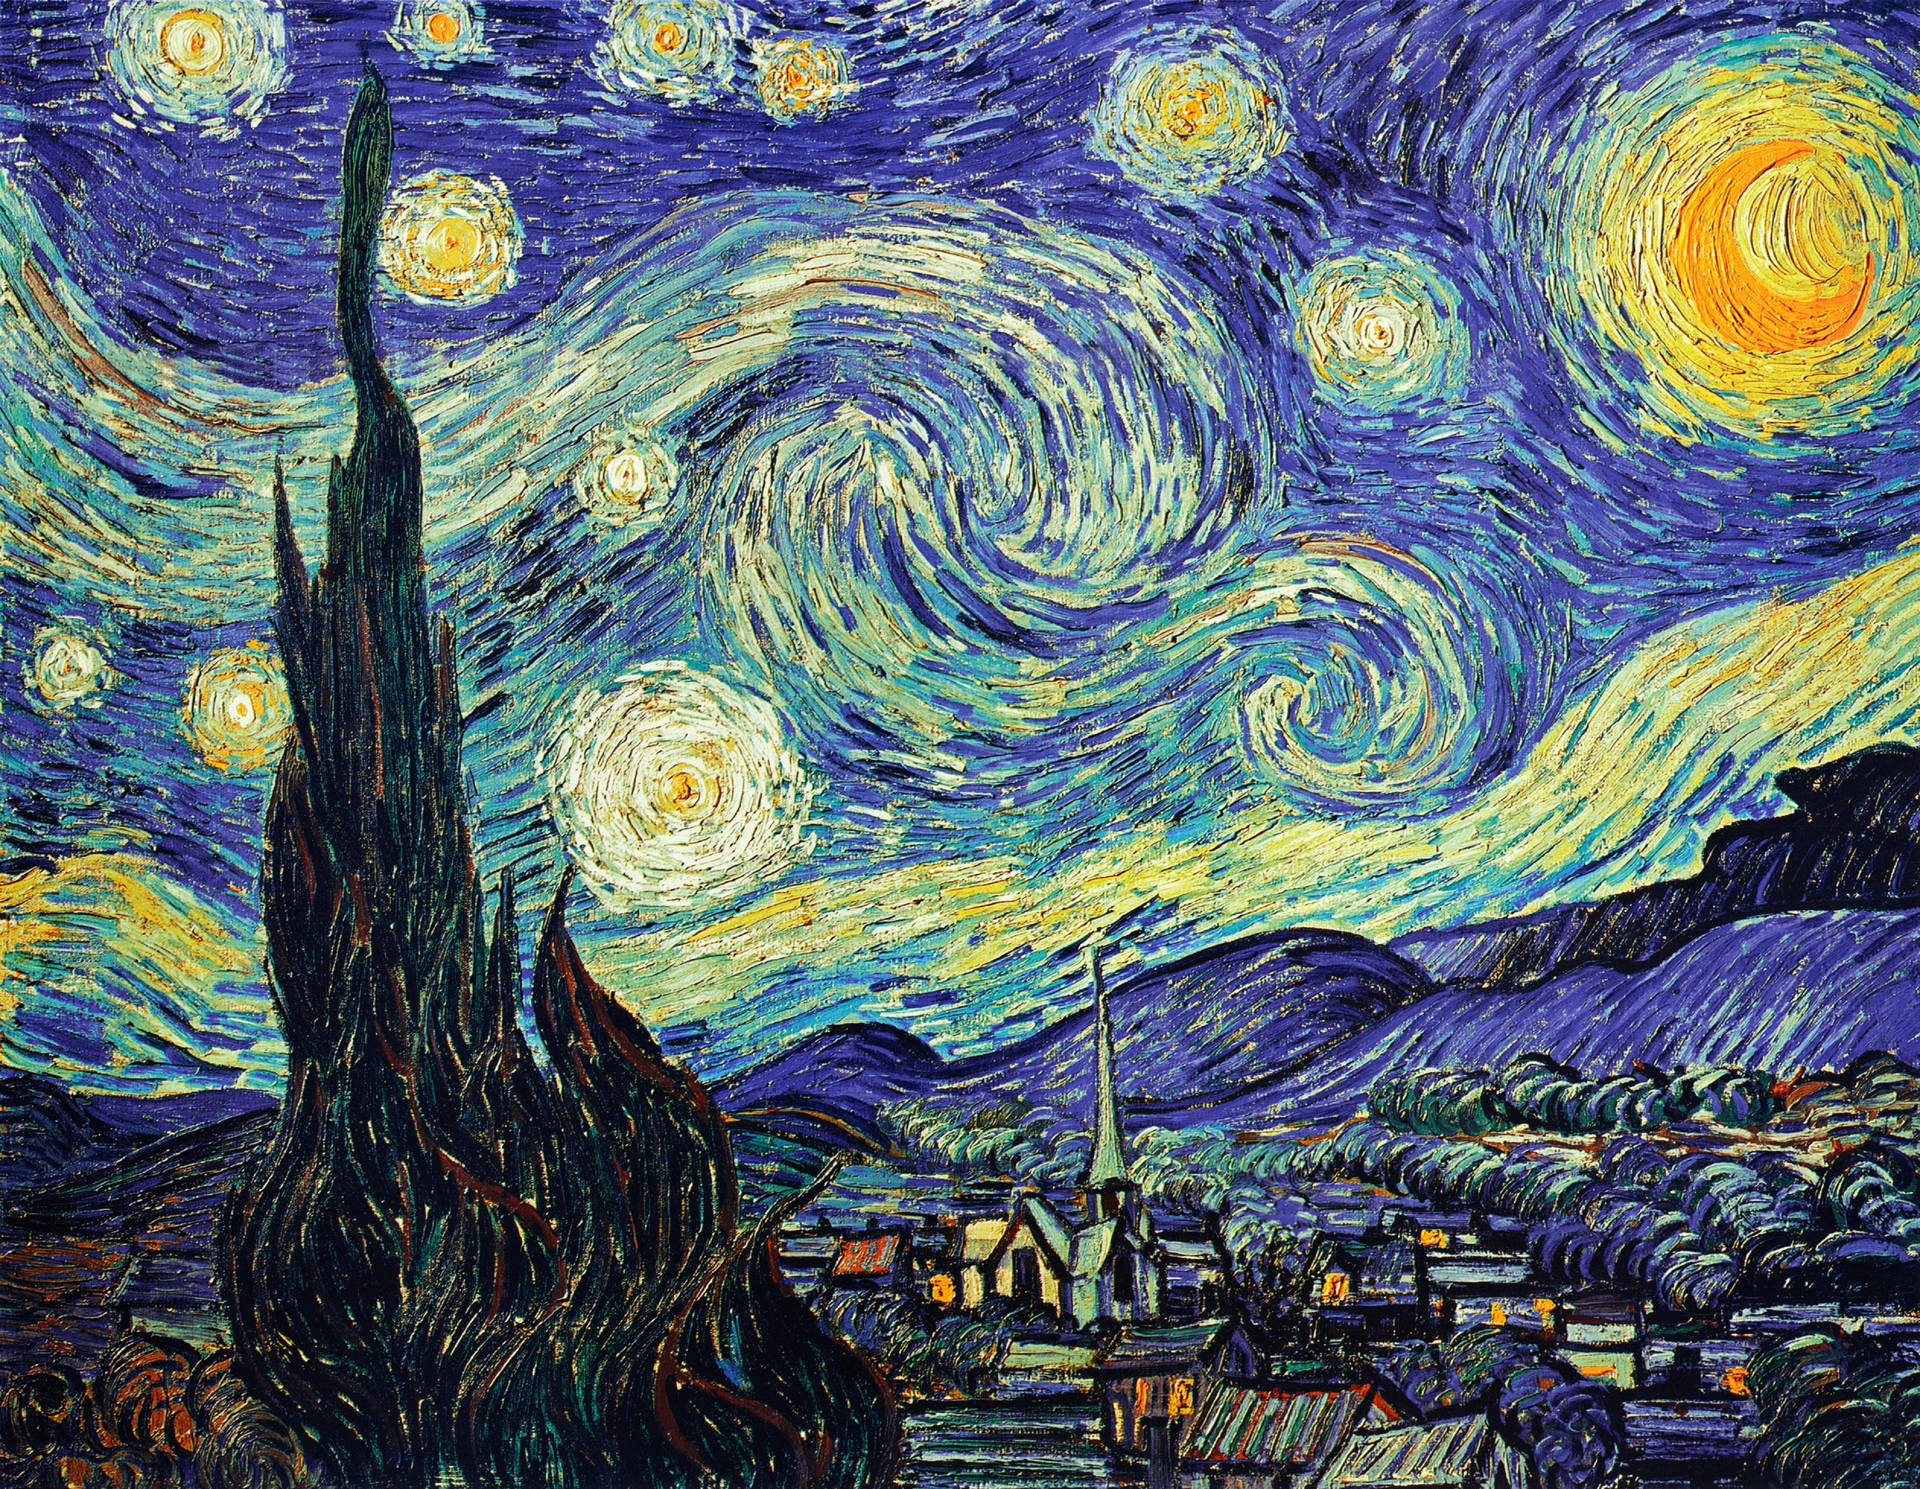 Có hơn 100 hình nền Vincent Van Gogh miễn phí để bạn lựa chọn. Bạn sẽ không thể bỏ qua cơ hội thưởng thức các bức tranh nghệ thuật nổi tiếng này trong không gian làm việc của mình. Tải ngay hình nền máy tính Vincent Van Gogh để thể hiện sự đam mê với nghệ thuật.